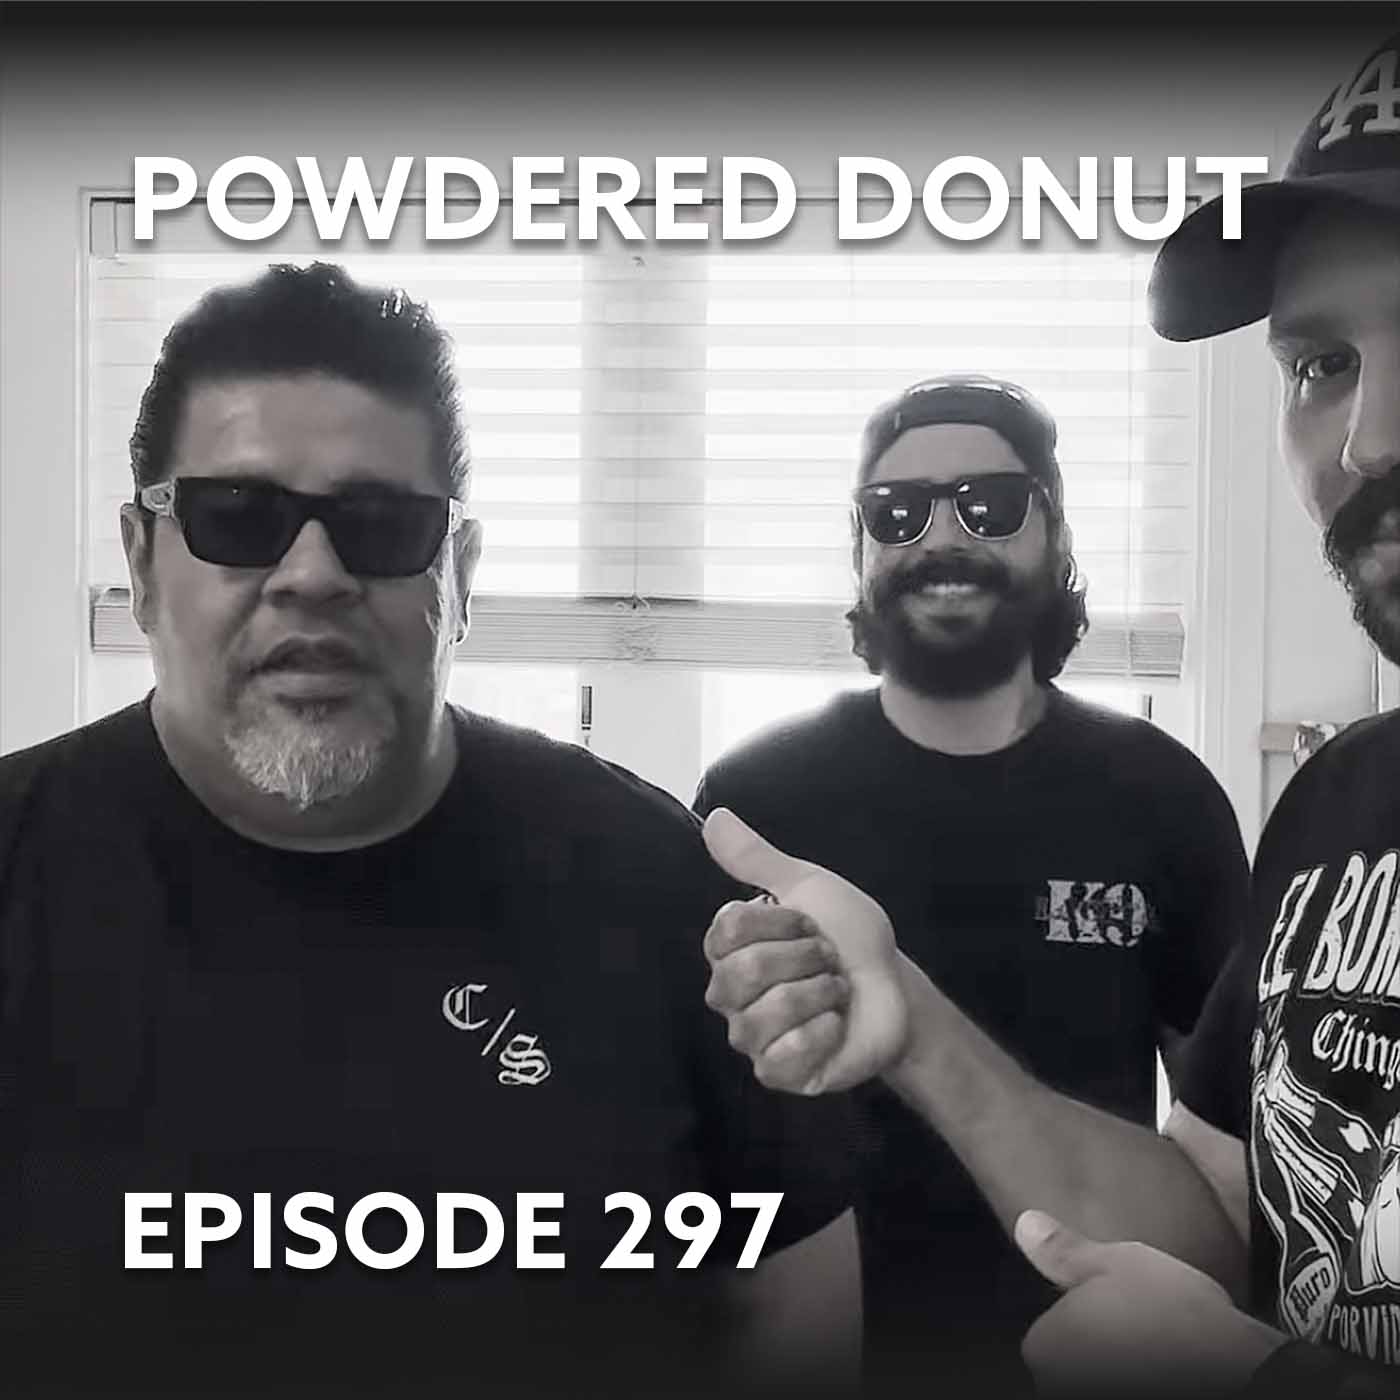 Episode 297 – Powdered Donut